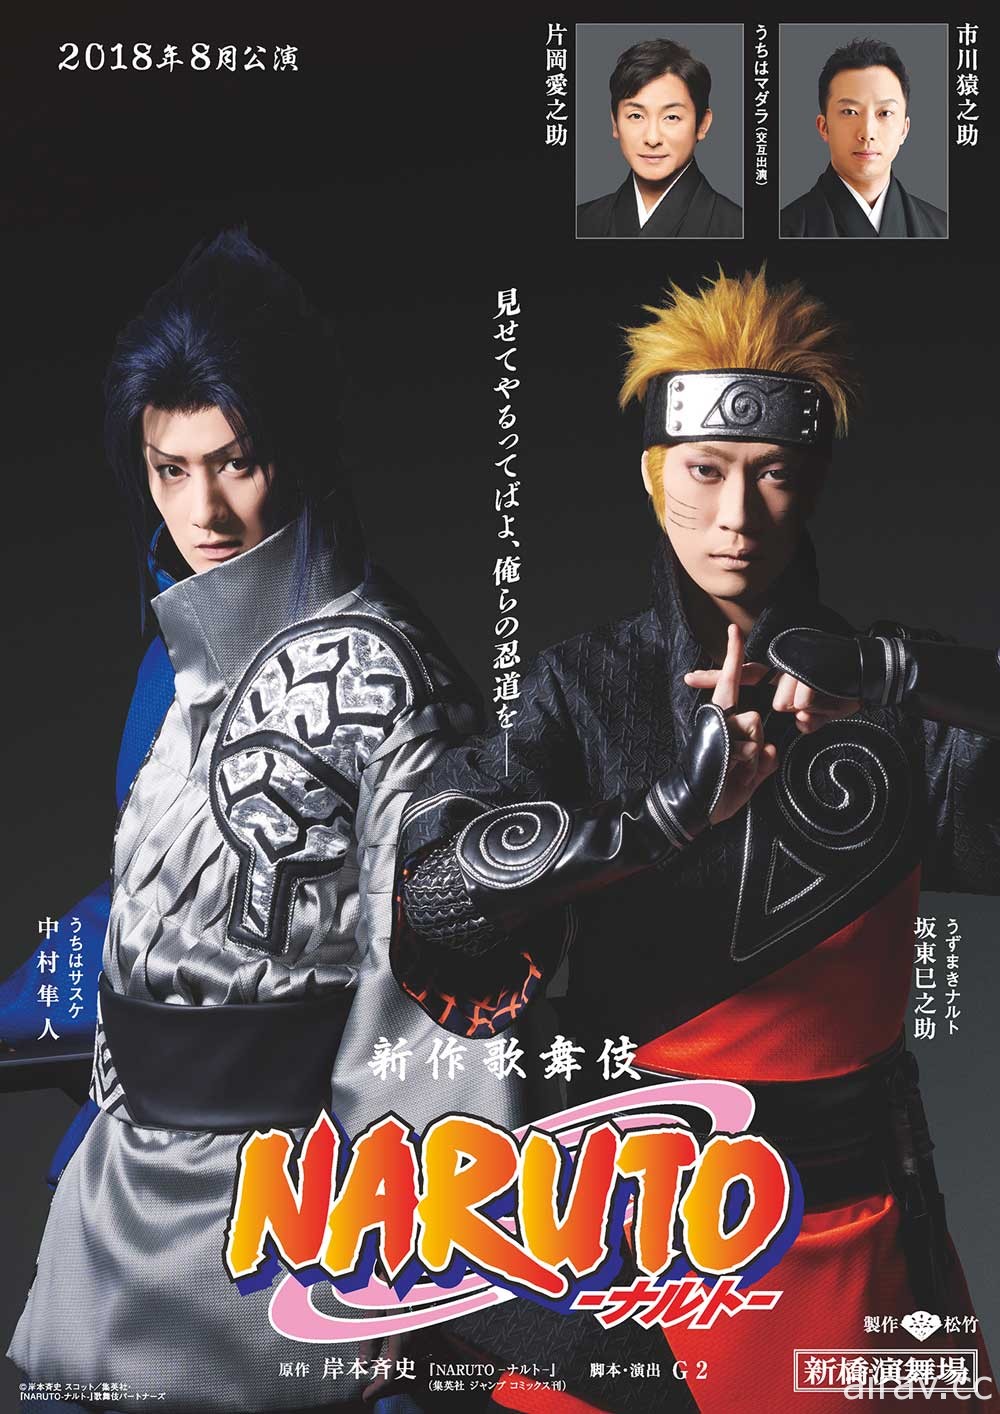 《火影忍者》将于今年 8 月在日本推出歌舞伎舞台公演 主宣传照释出